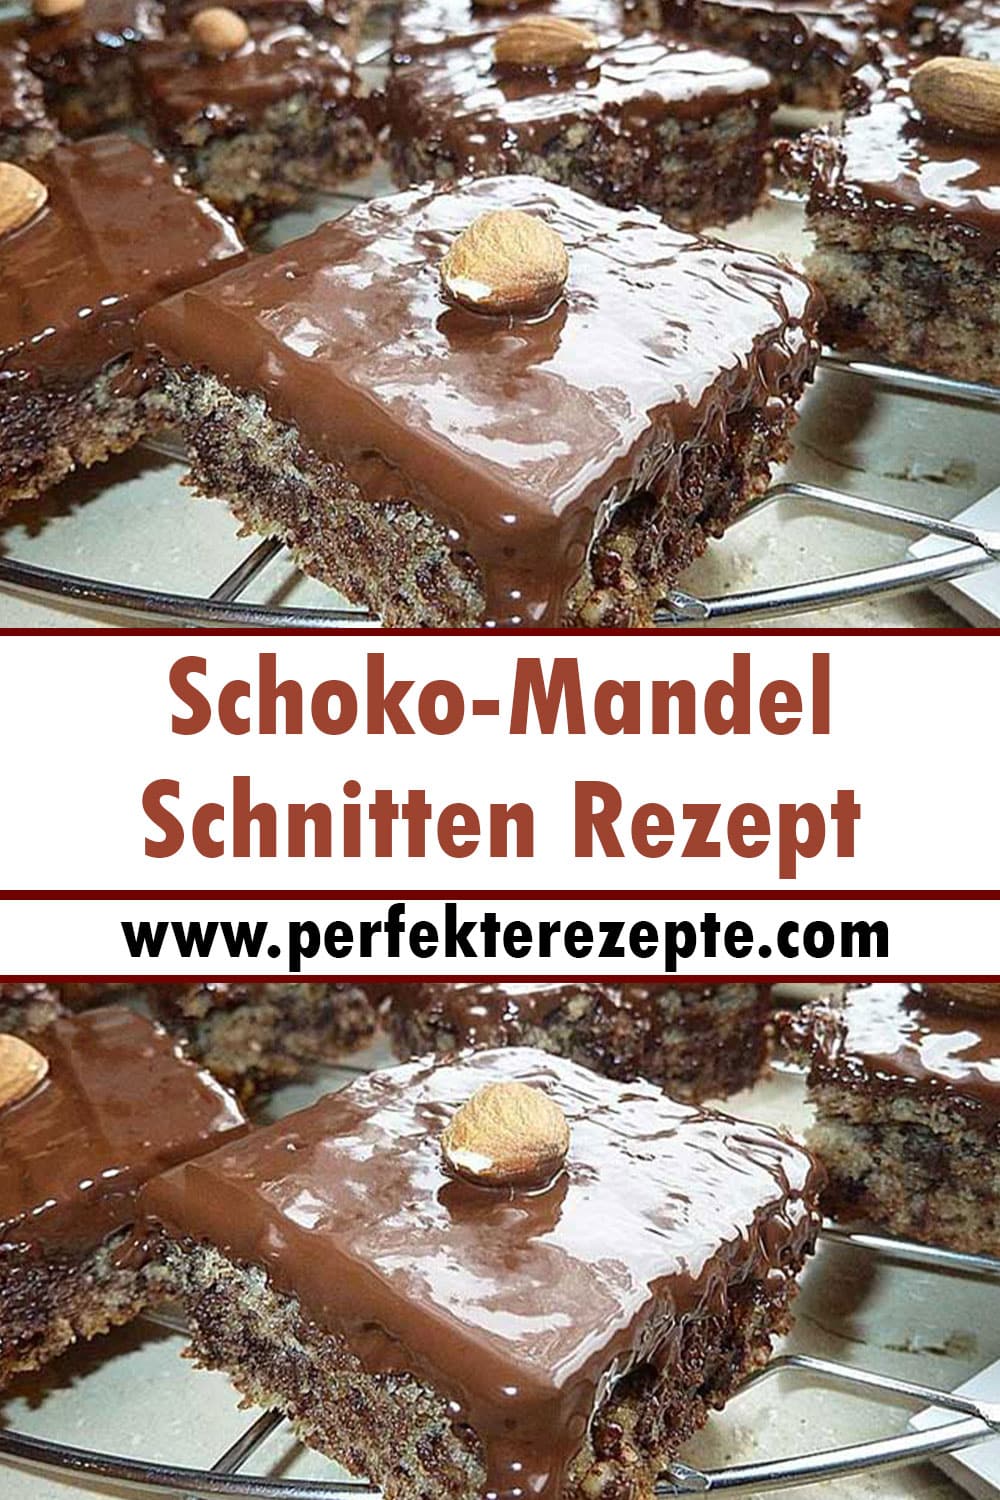 Schoko-Mandel-Schnitten Rezept